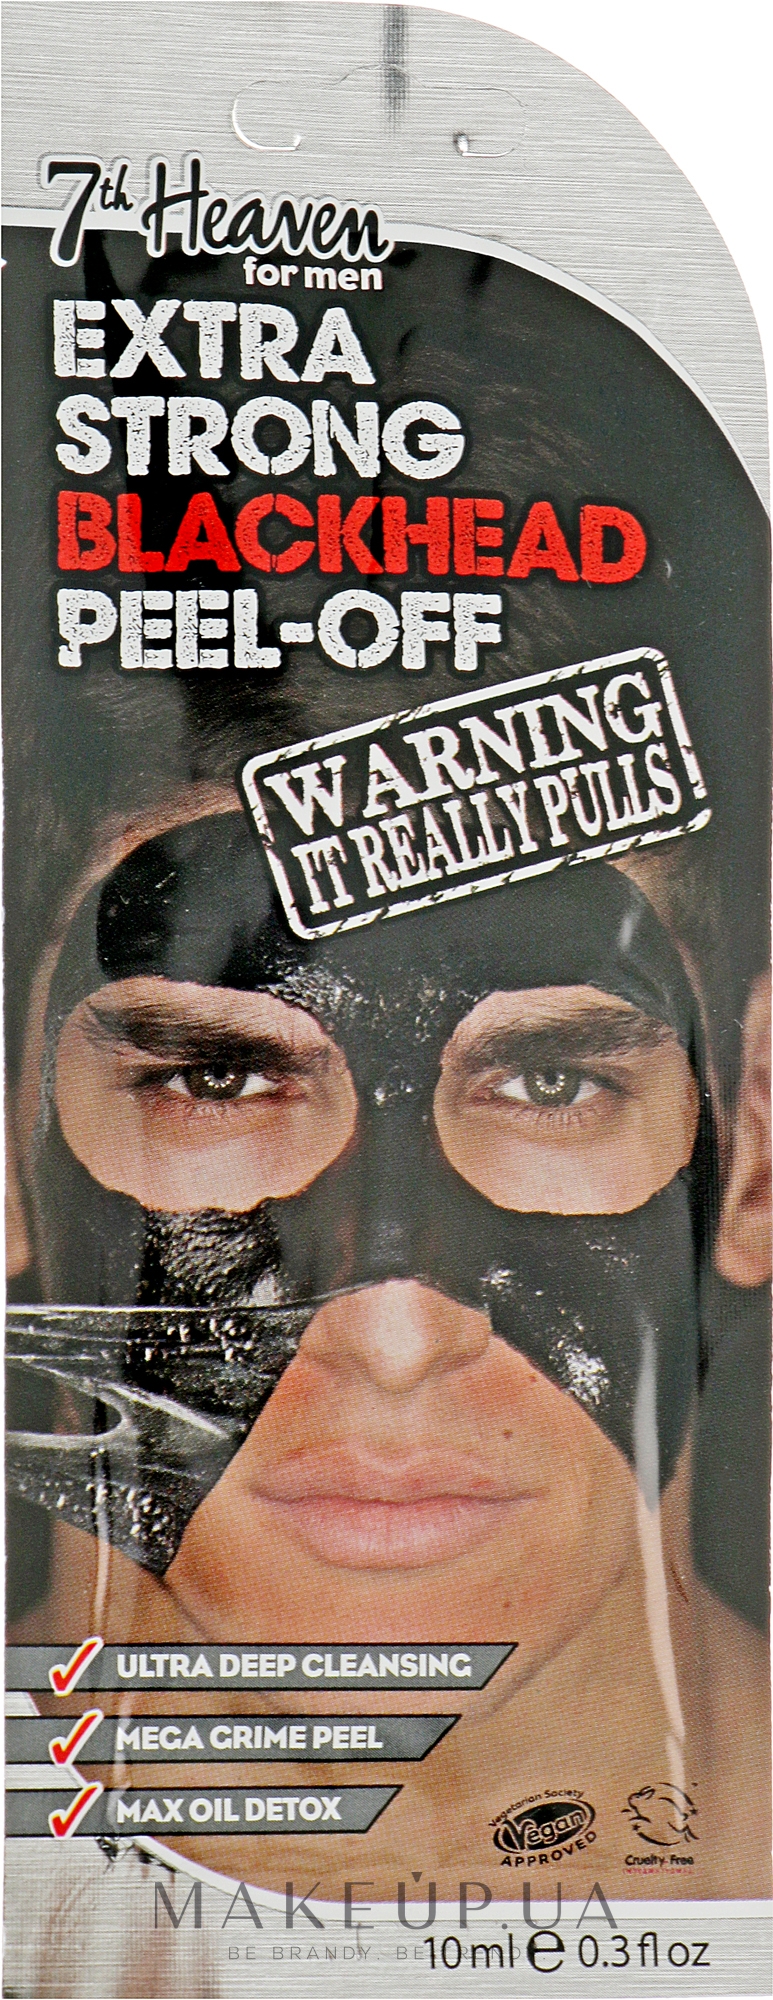 Маска-пленка "Экстра Очищение"для мужчин - 7th Heaven Men's Extra Strong Blackhead Peel-Off Mask  — фото 10ml